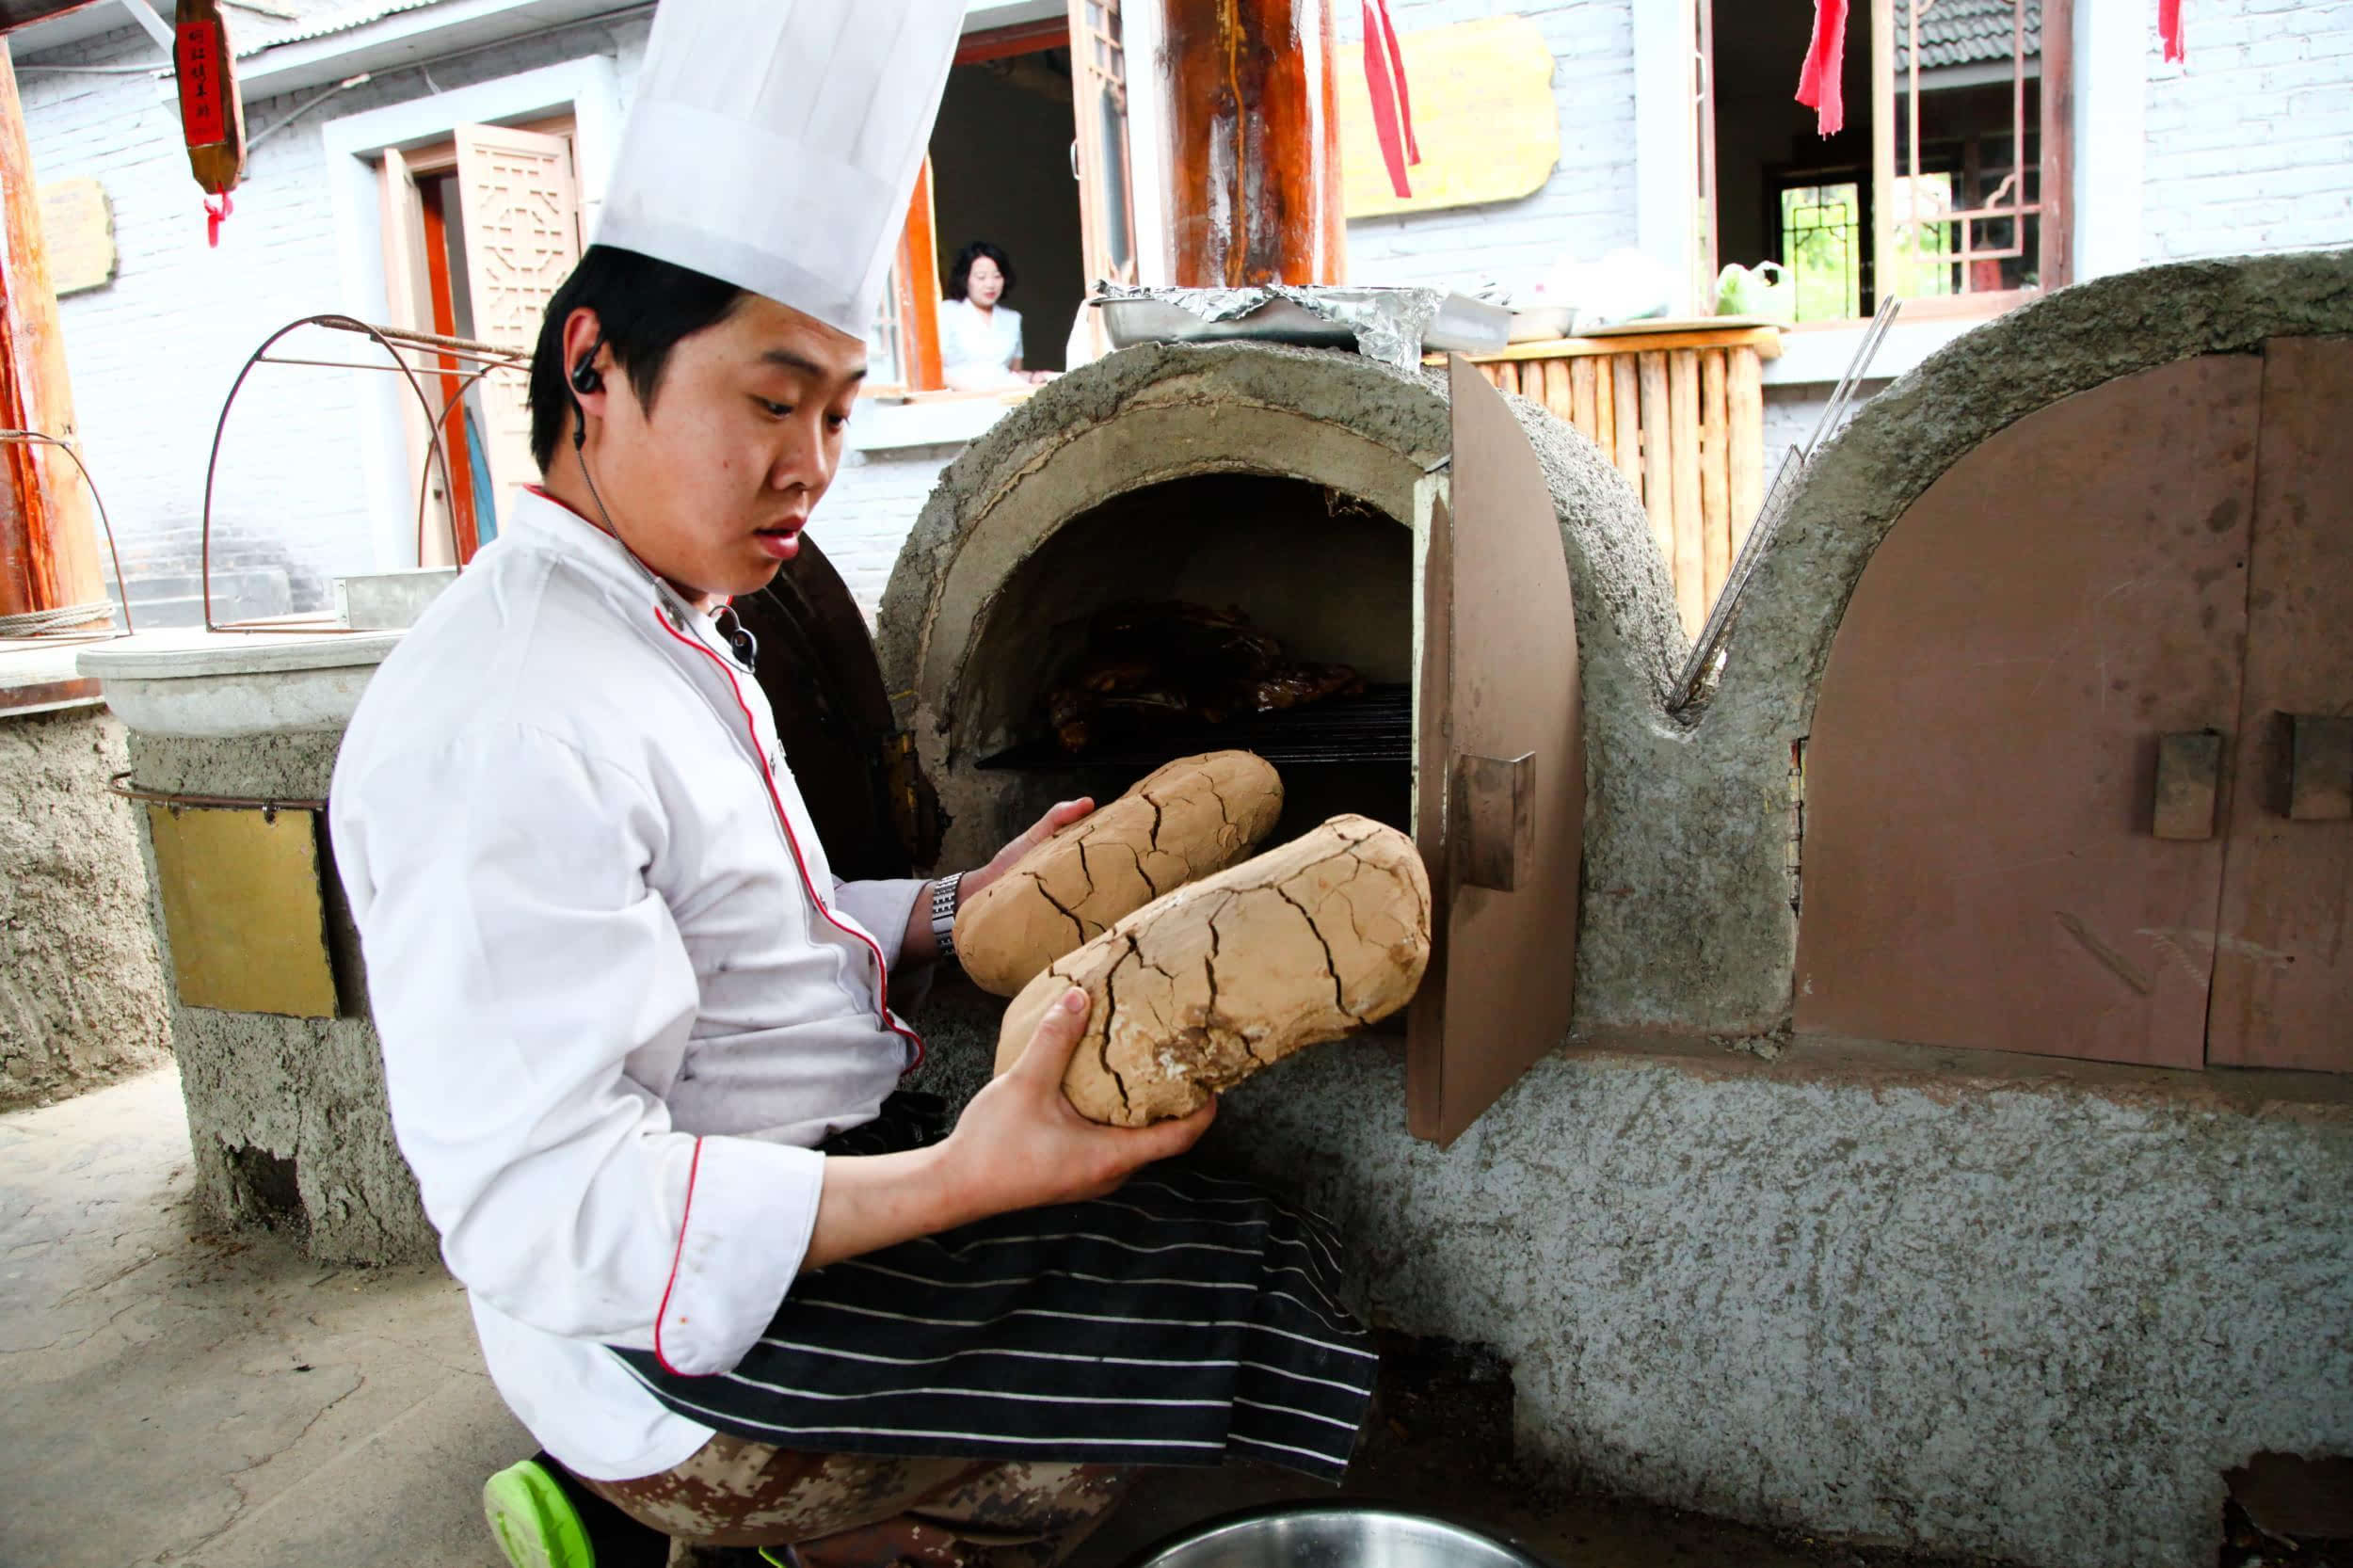 的肉,亲手串成蒙古族著名的红柳大串;锡伯族民间土窑里烤着叫花鸡